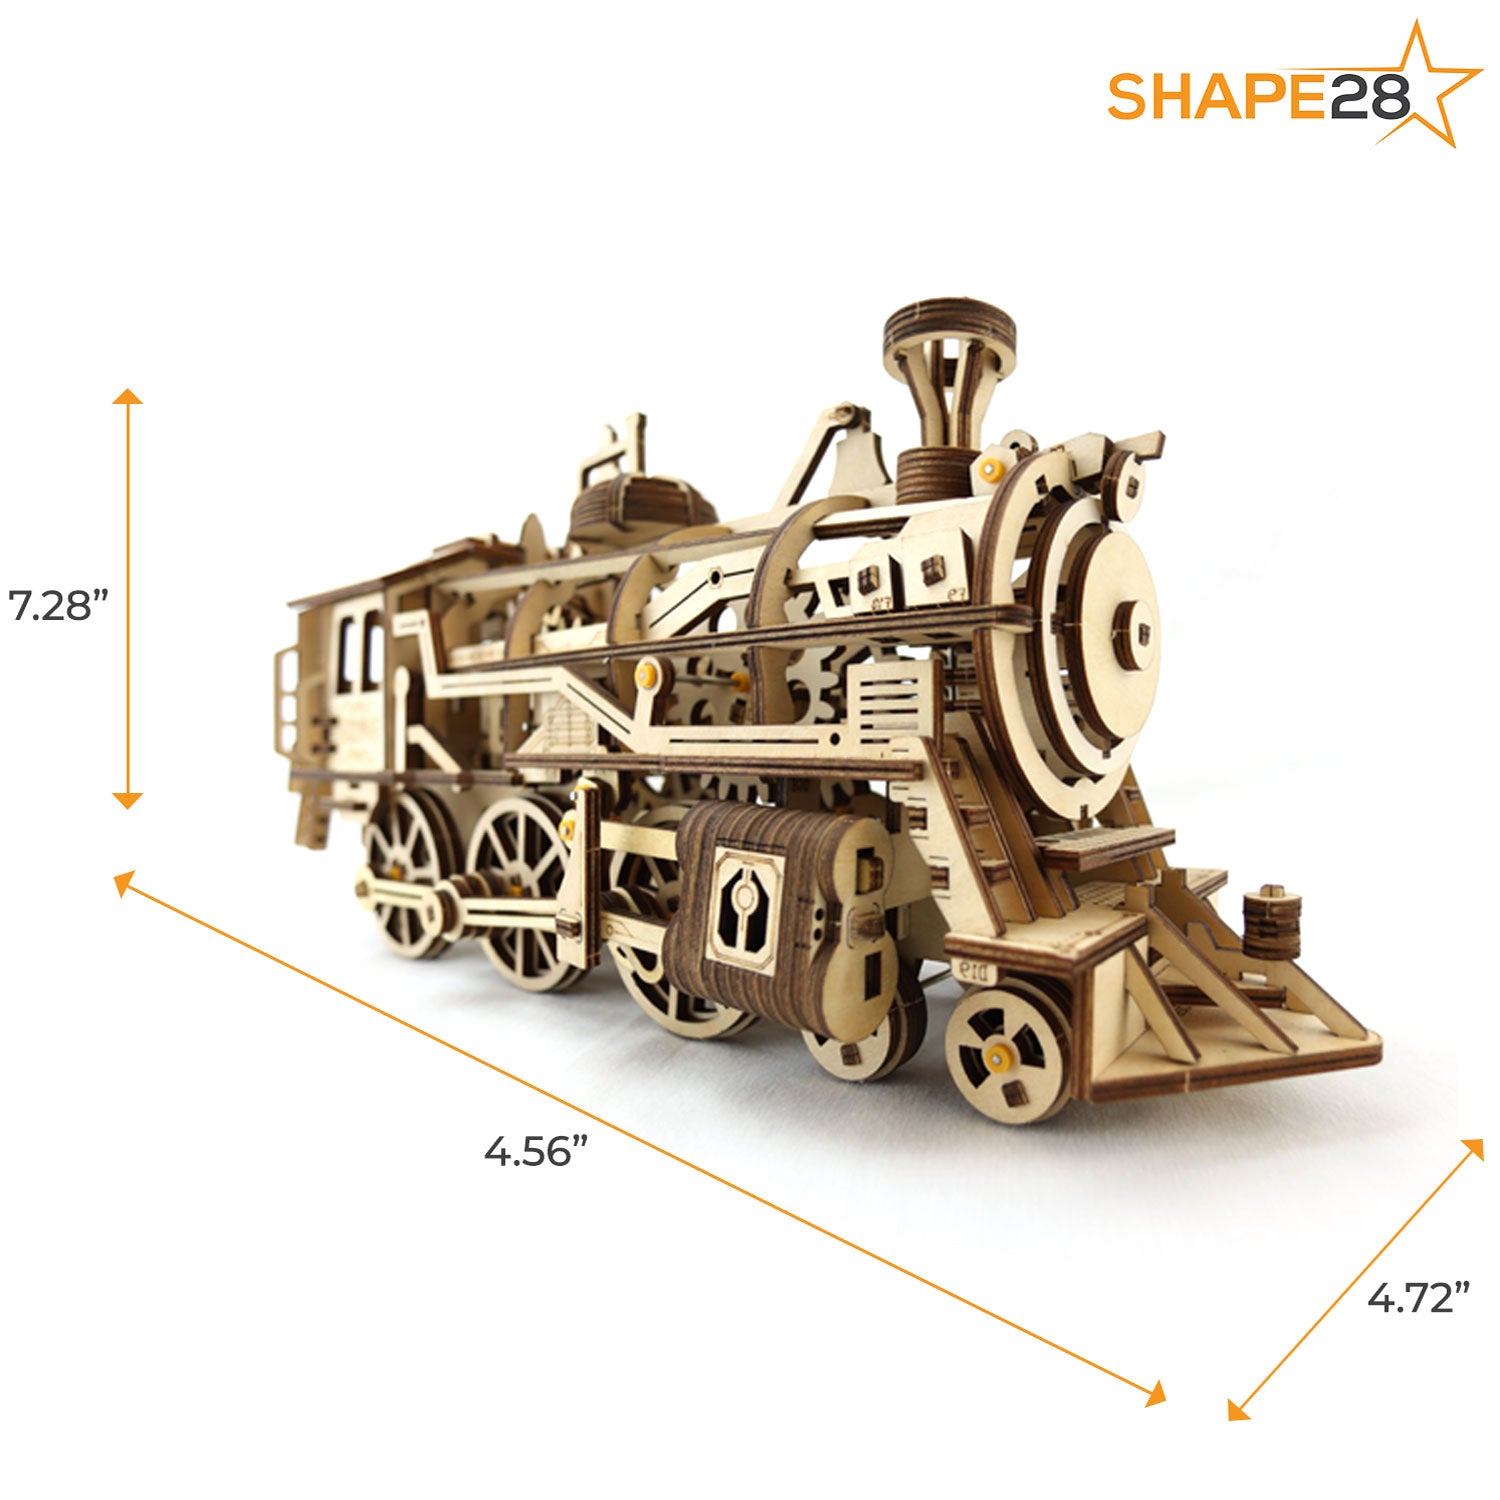 3D Wooden Puzzle - Locomotive